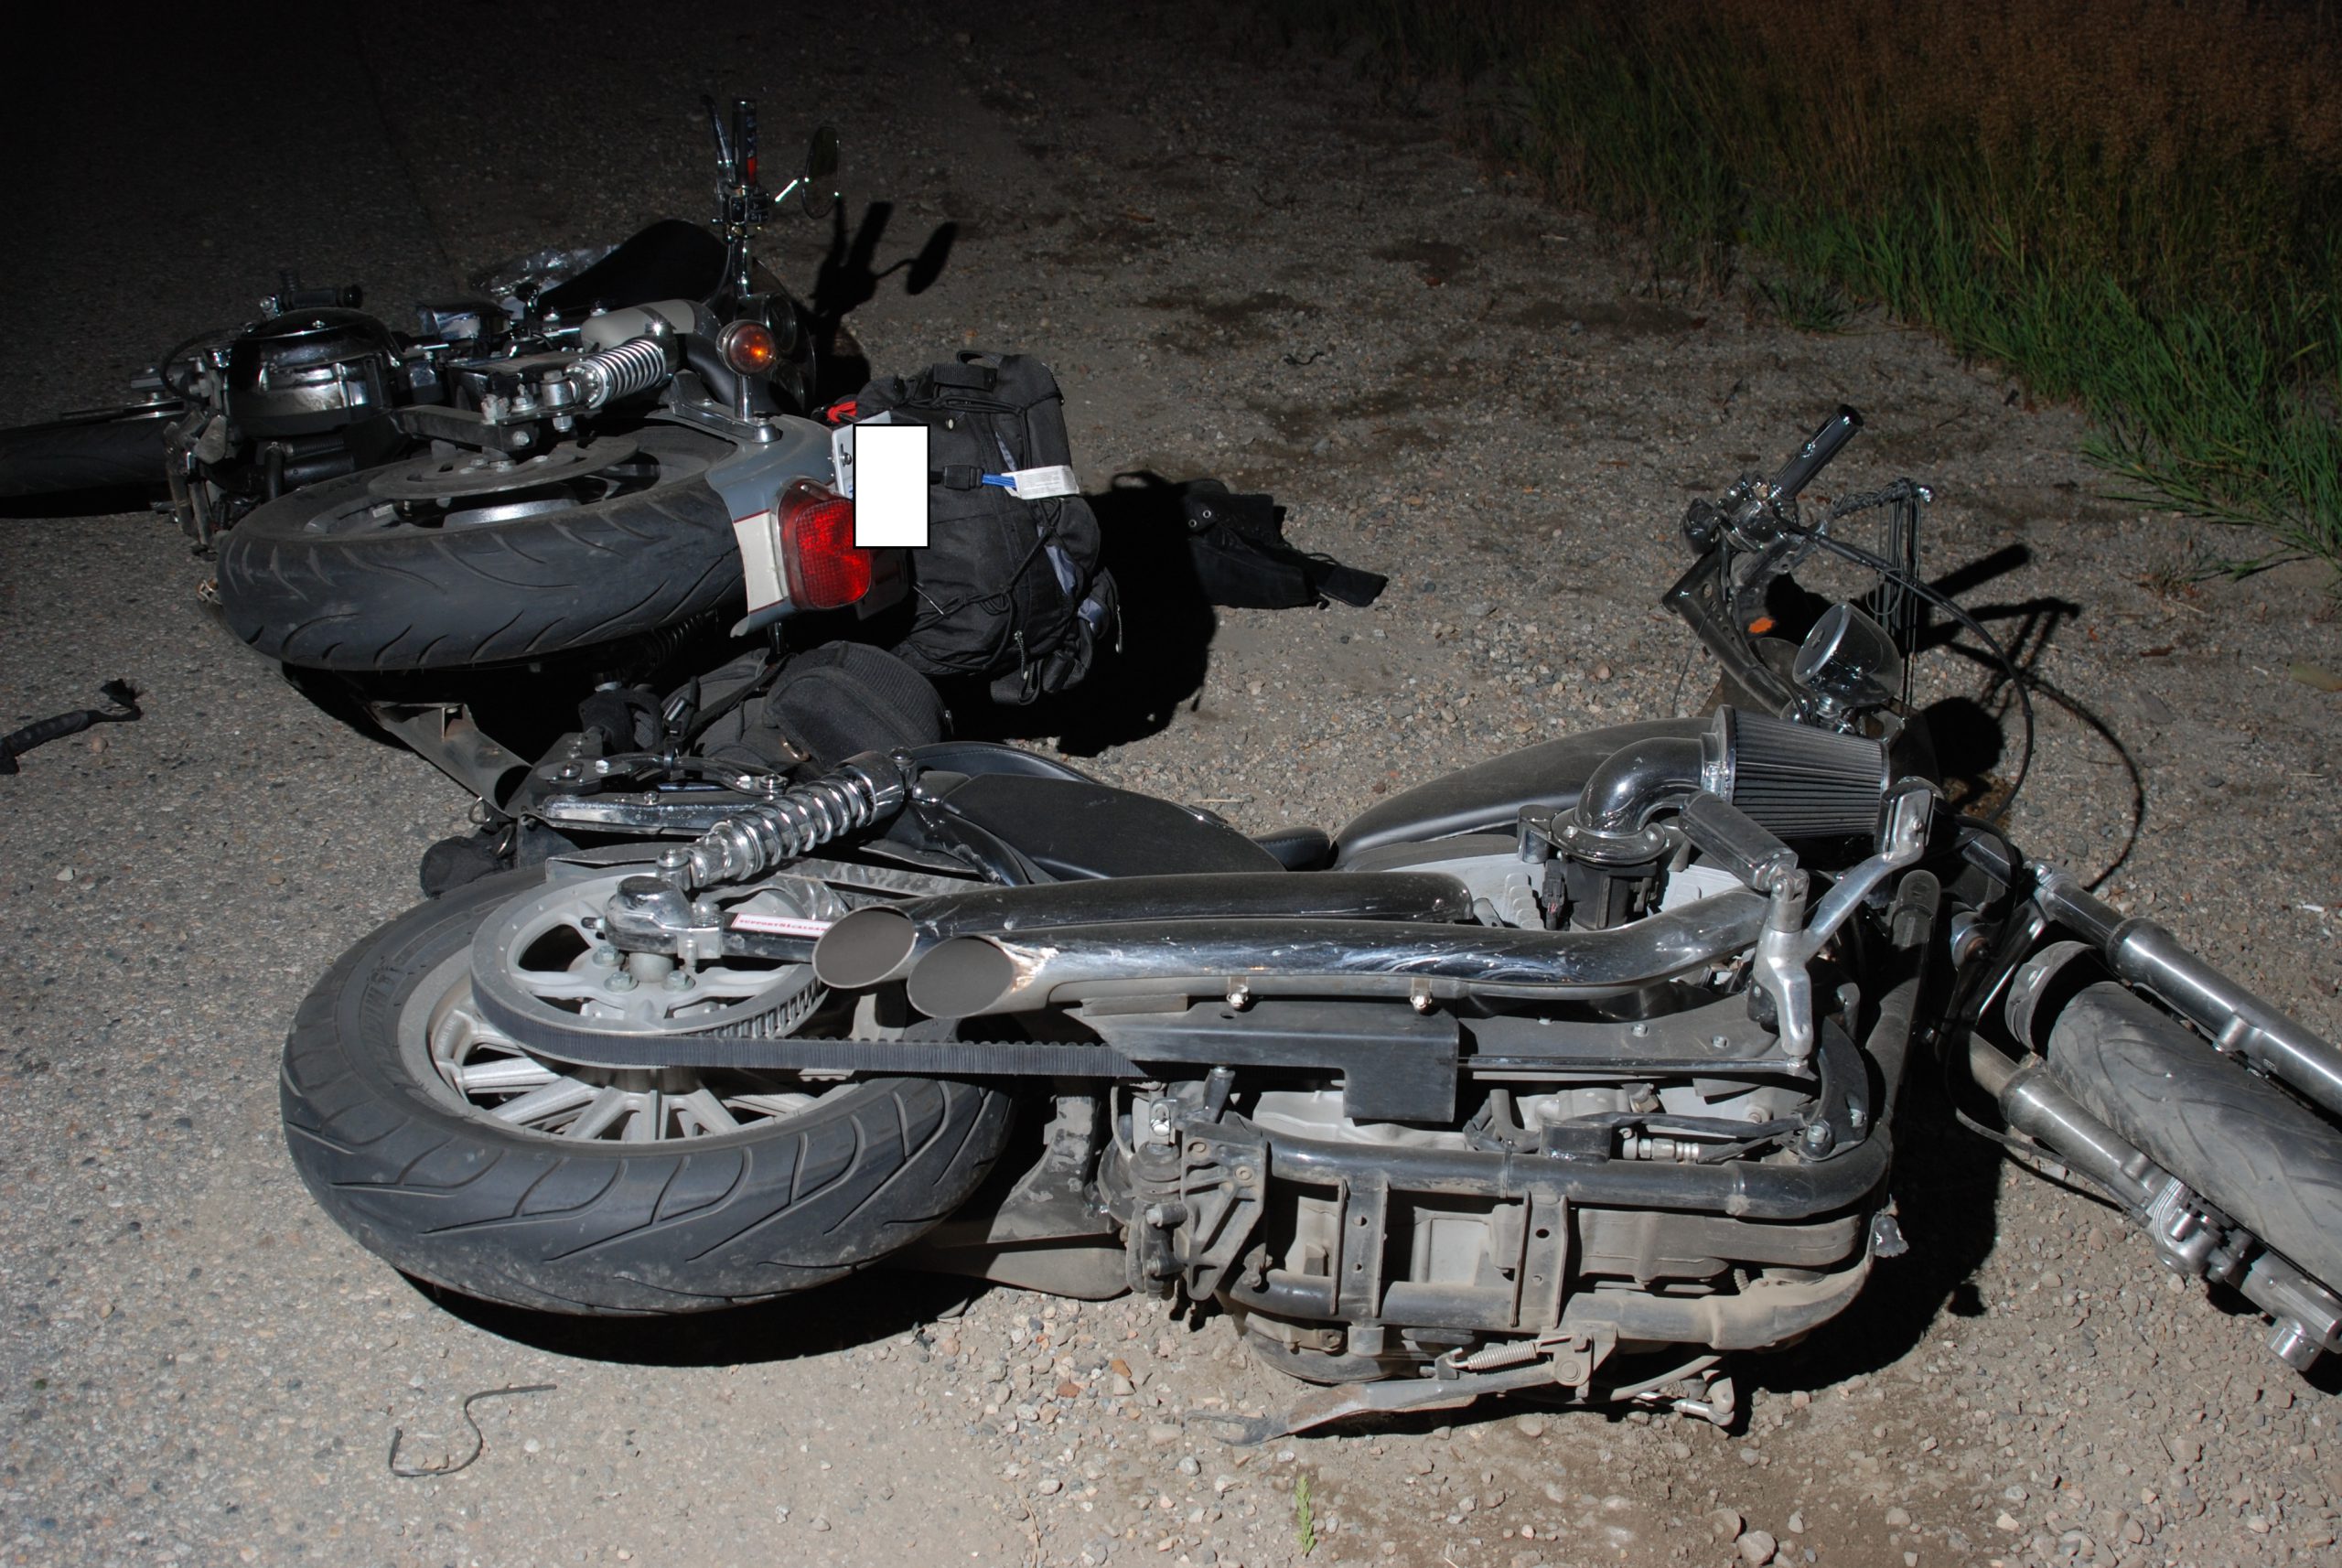 Two injured in motorcycle crash